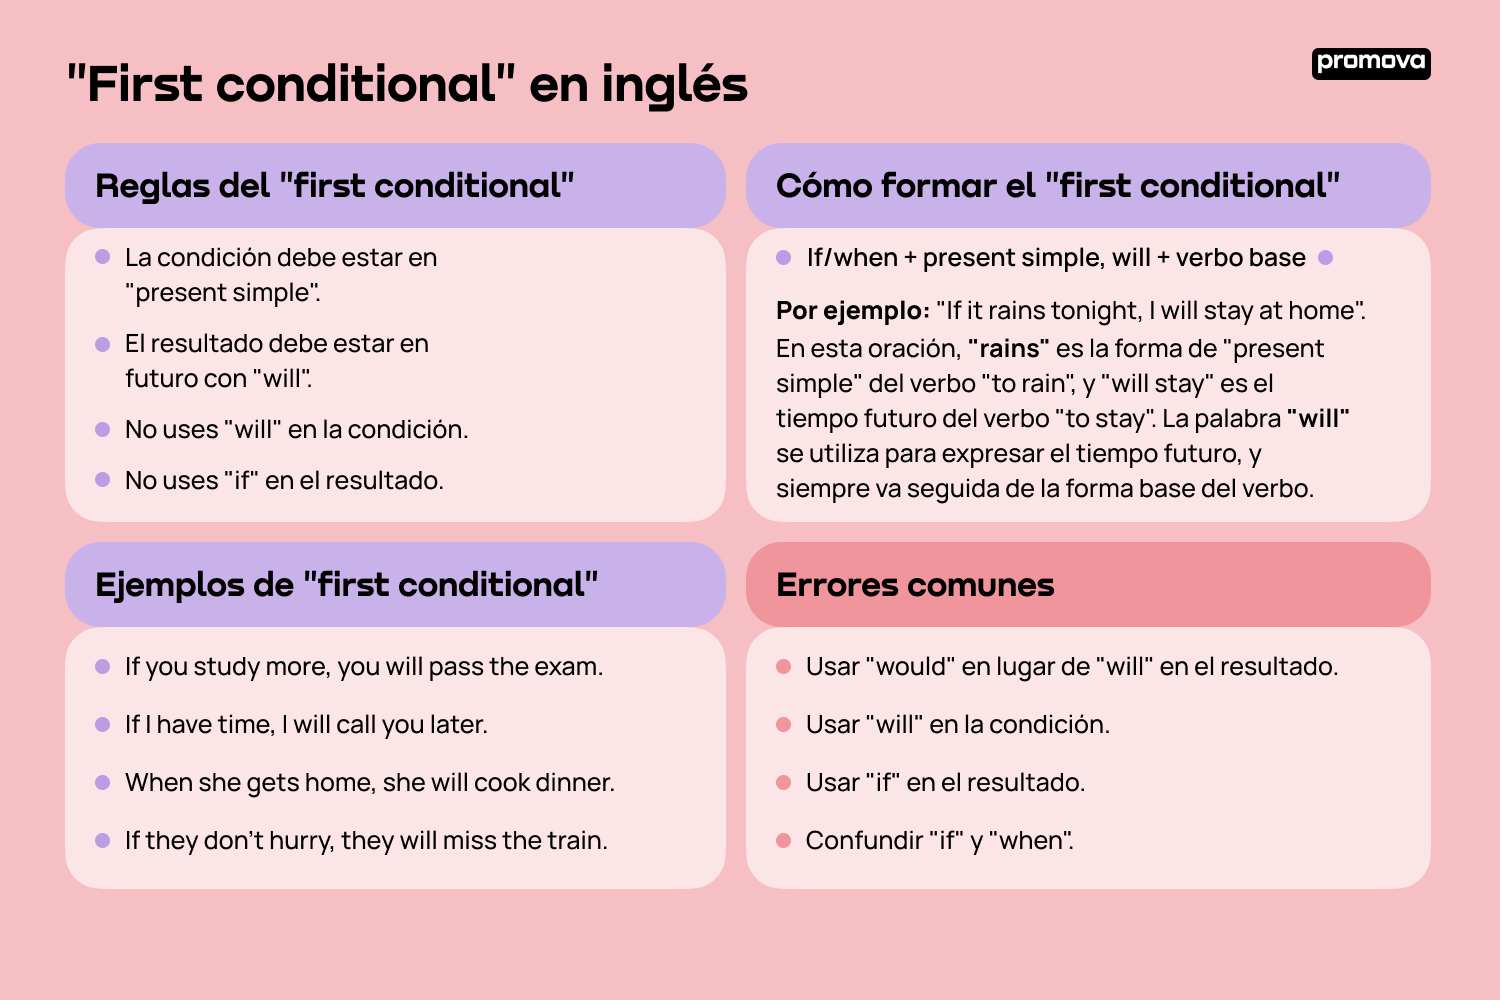 Domina el first conditional en inglés de forma sencilla y efectiva